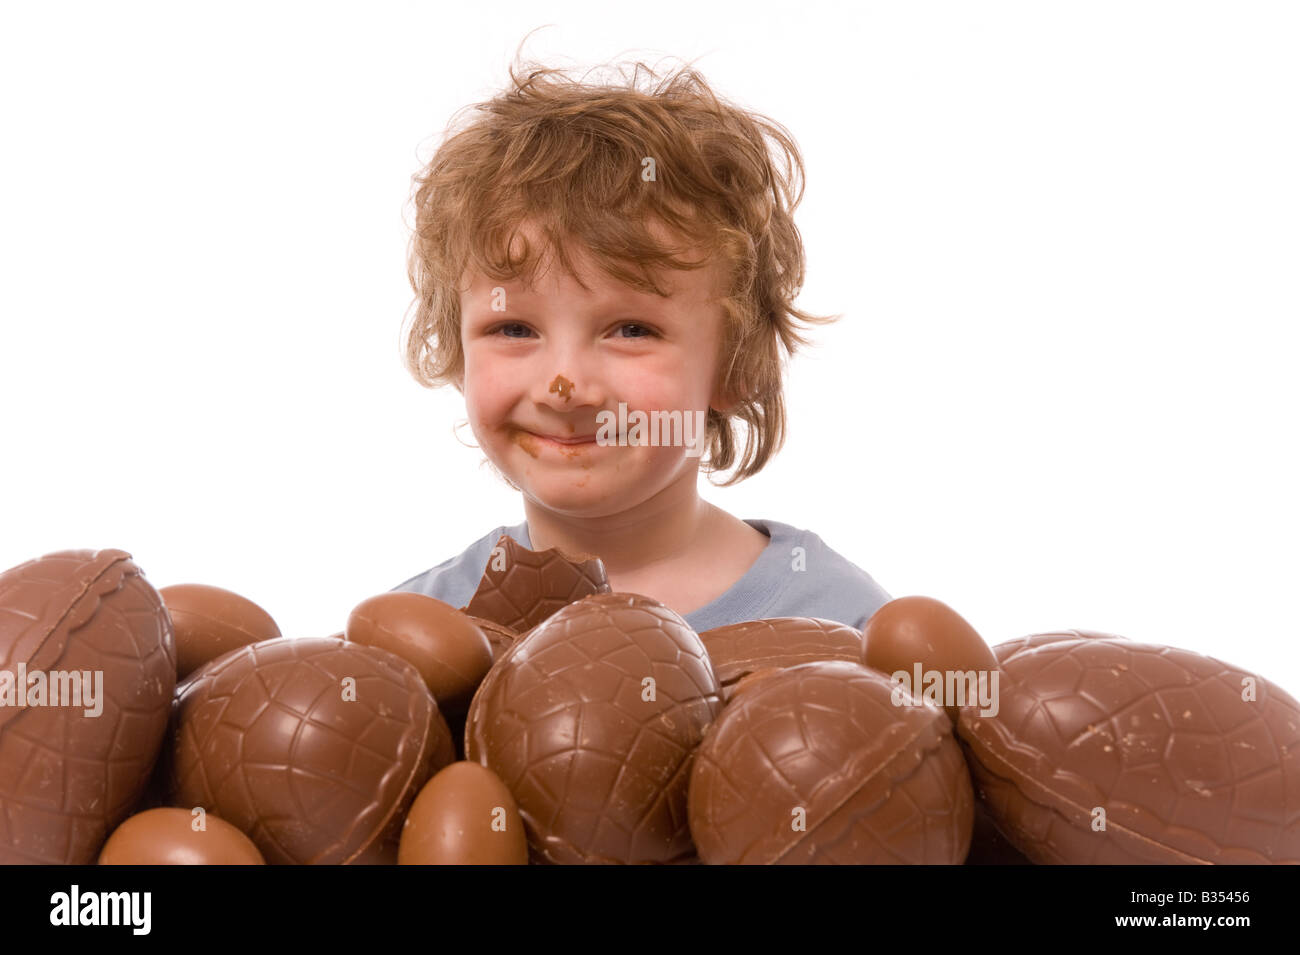 Jeune enfant avec du chocolat sur son nez émergeant de derrière une grosse pile d'oeufs de Pâques Banque D'Images